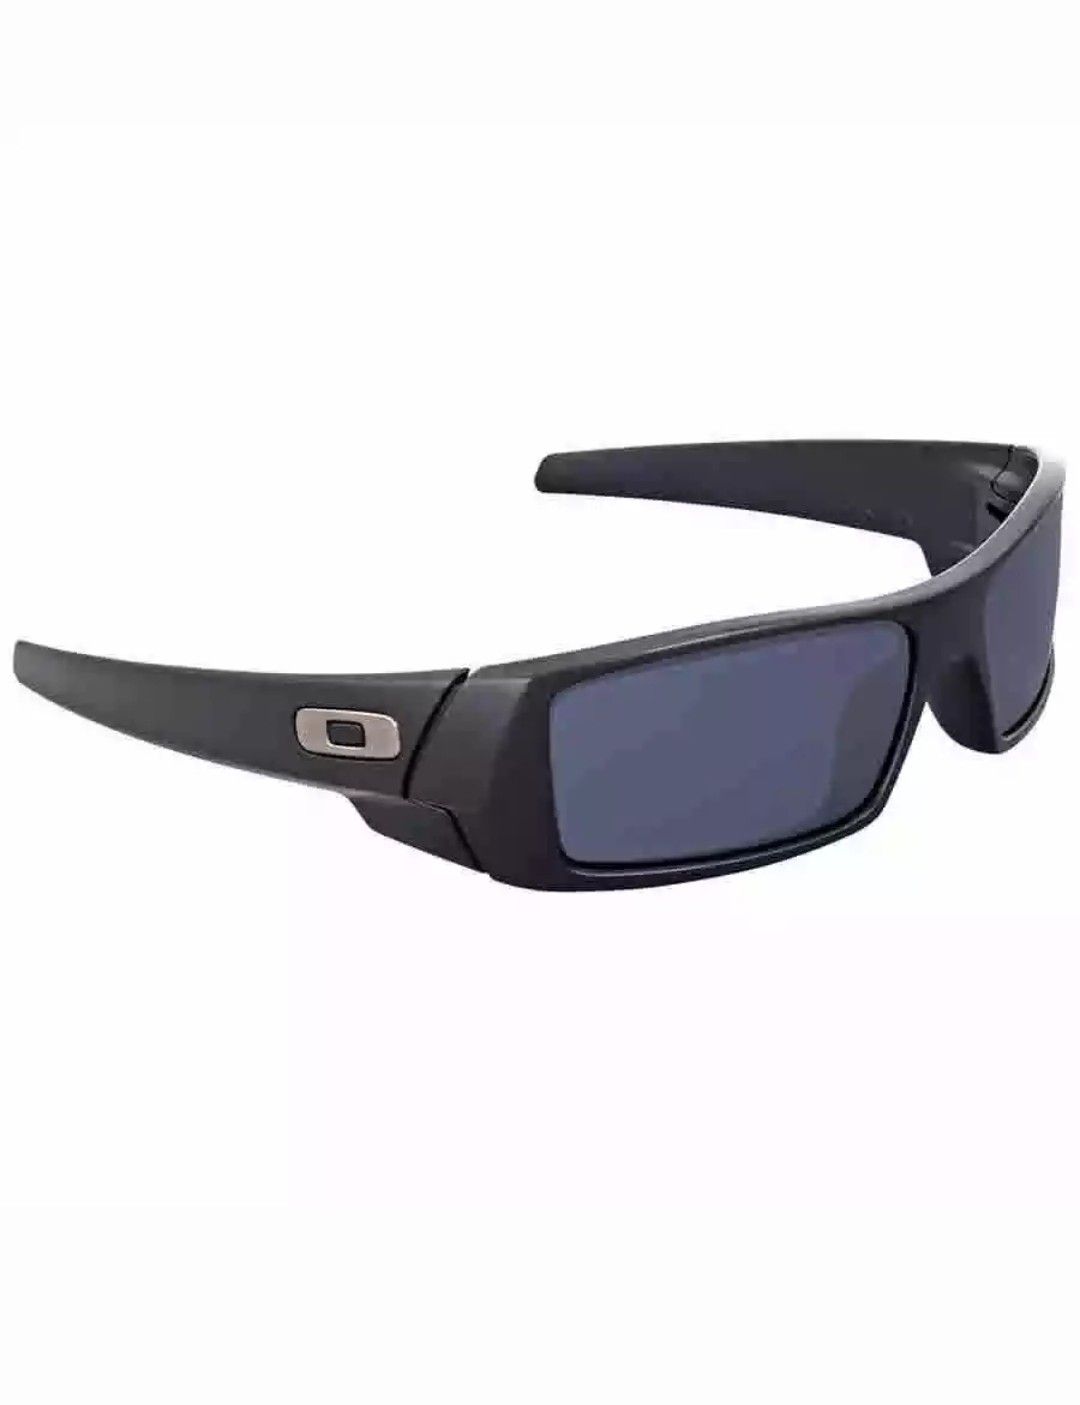 Oakley Gascan Matte Black Sunglasses OO9014-03-473-61 OO9014-03-473-61